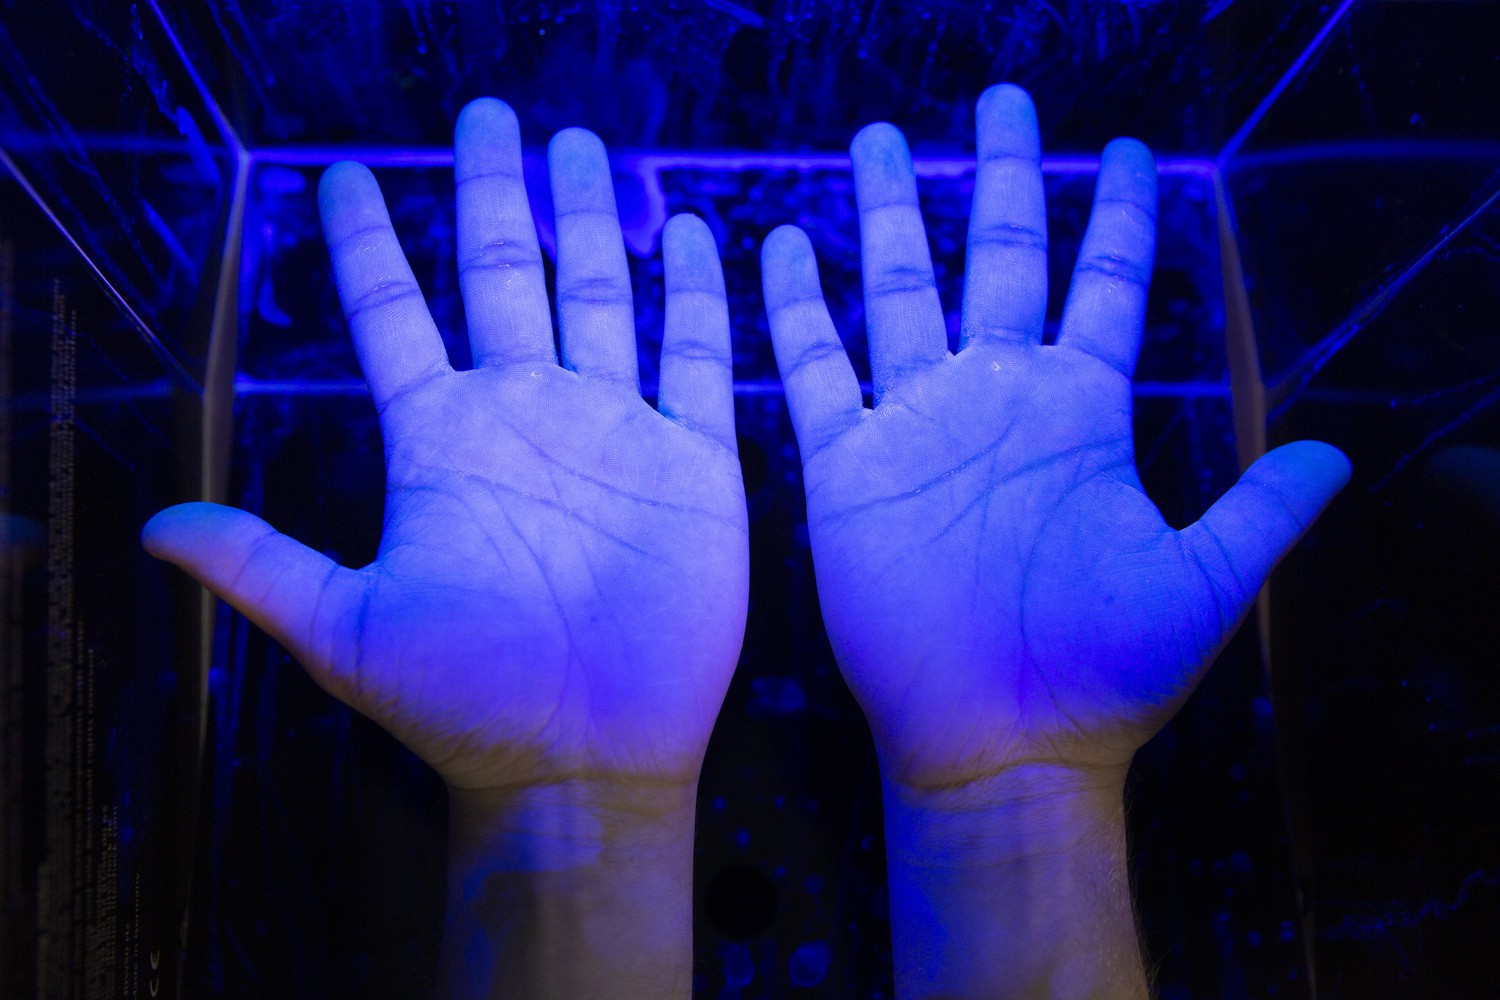 Saubere Hände sind für die Hygiene – auch und besonders im Krankenhaus -  von großer Bedeutung. Unter UV-Licht kann sichtbar werden, ob sie richtig gereinigt und desinfiziert wurden.